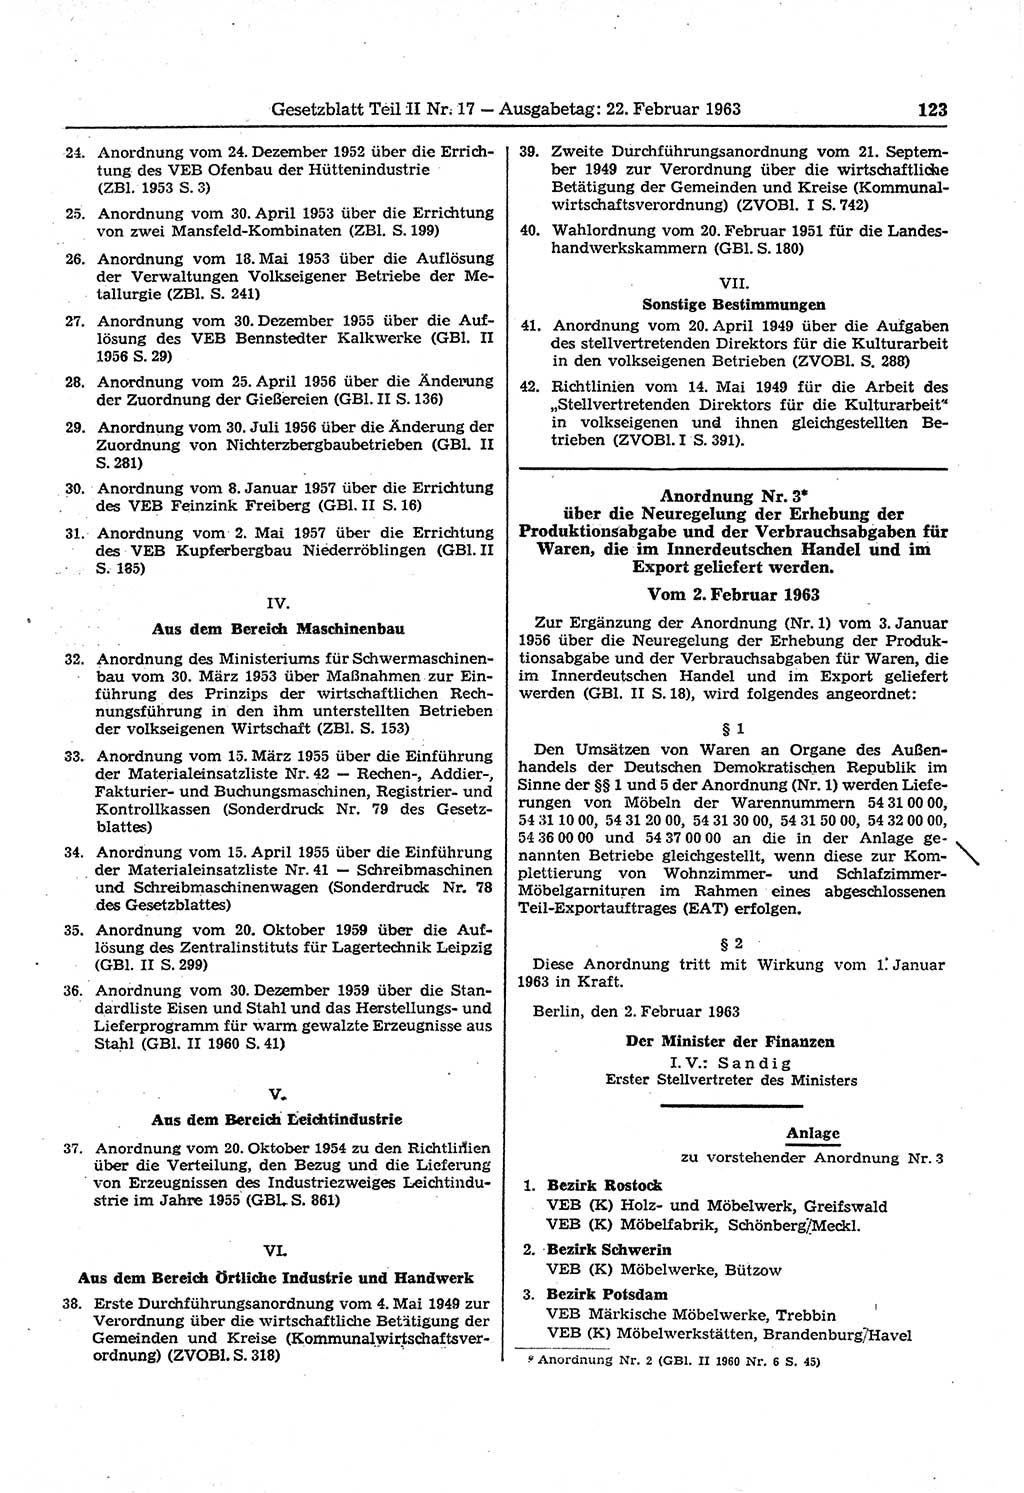 Gesetzblatt (GBl.) der Deutschen Demokratischen Republik (DDR) Teil ⅠⅠ 1963, Seite 123 (GBl. DDR ⅠⅠ 1963, S. 123)